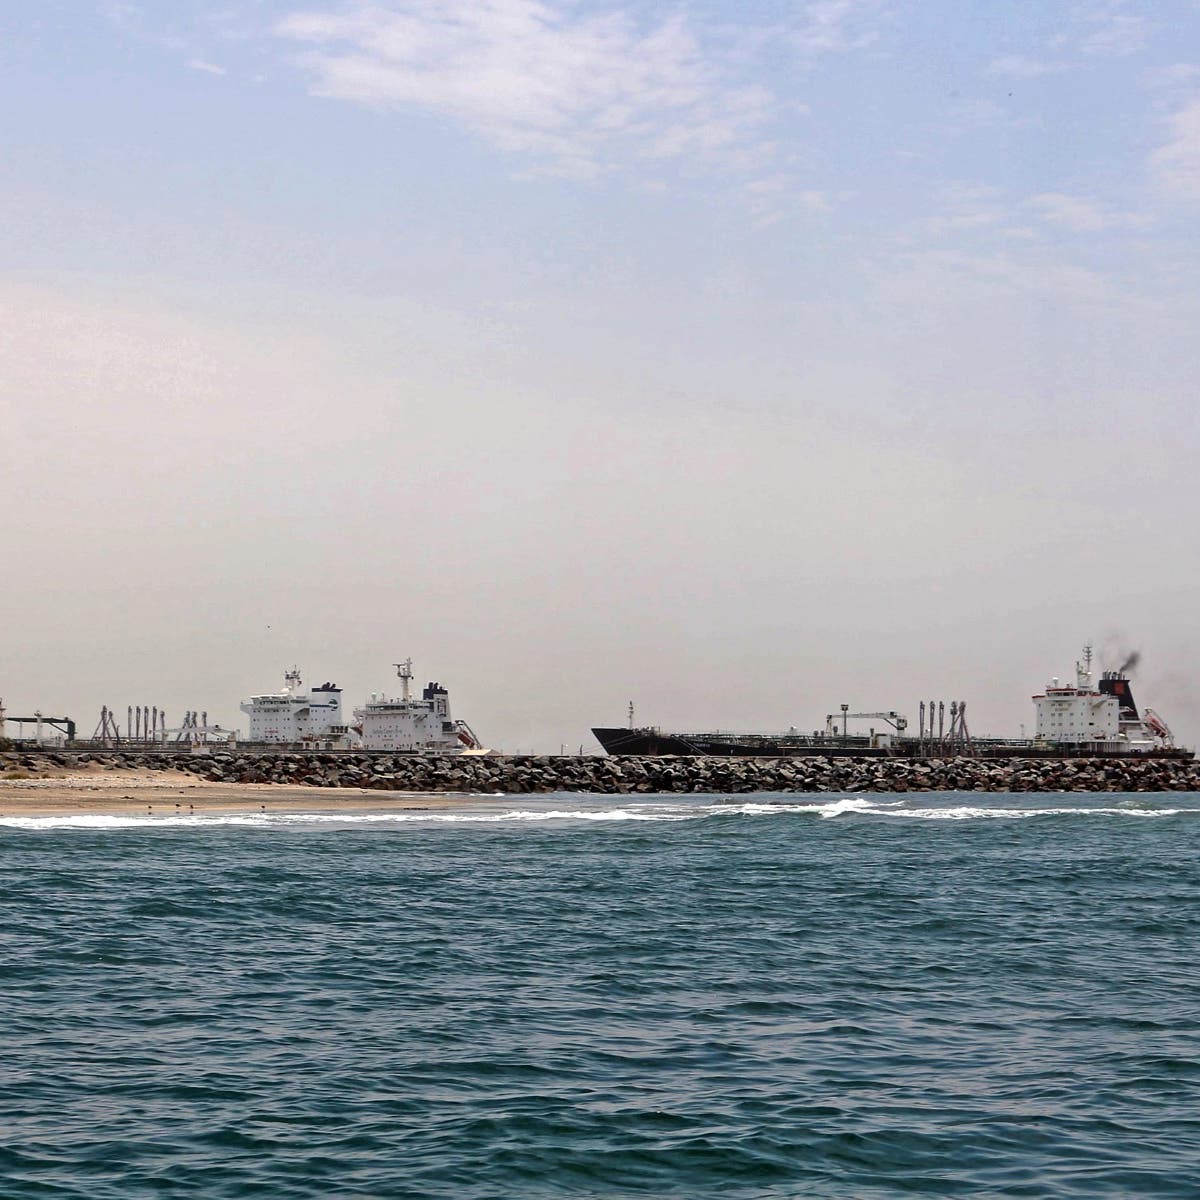 التحالف: ميليشيا الحوثي خطفت سفينة شحن قبالة الحديدة